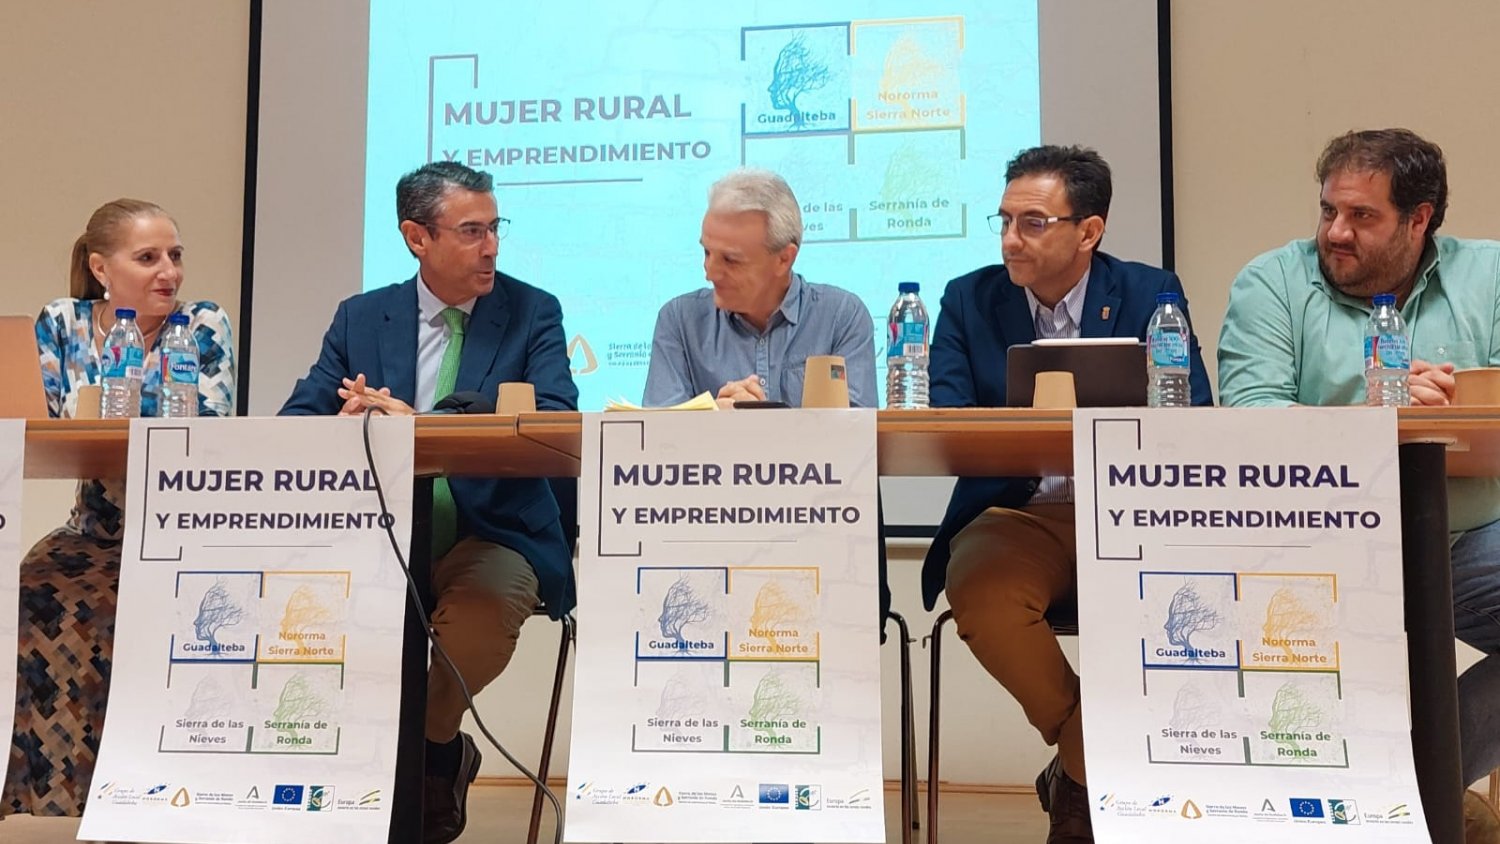 La Junta apoya el proyecto “Mujer Rural y Emprendimiento” en Guadalteba, Ronda, Sierra de las Nieves y Nororma